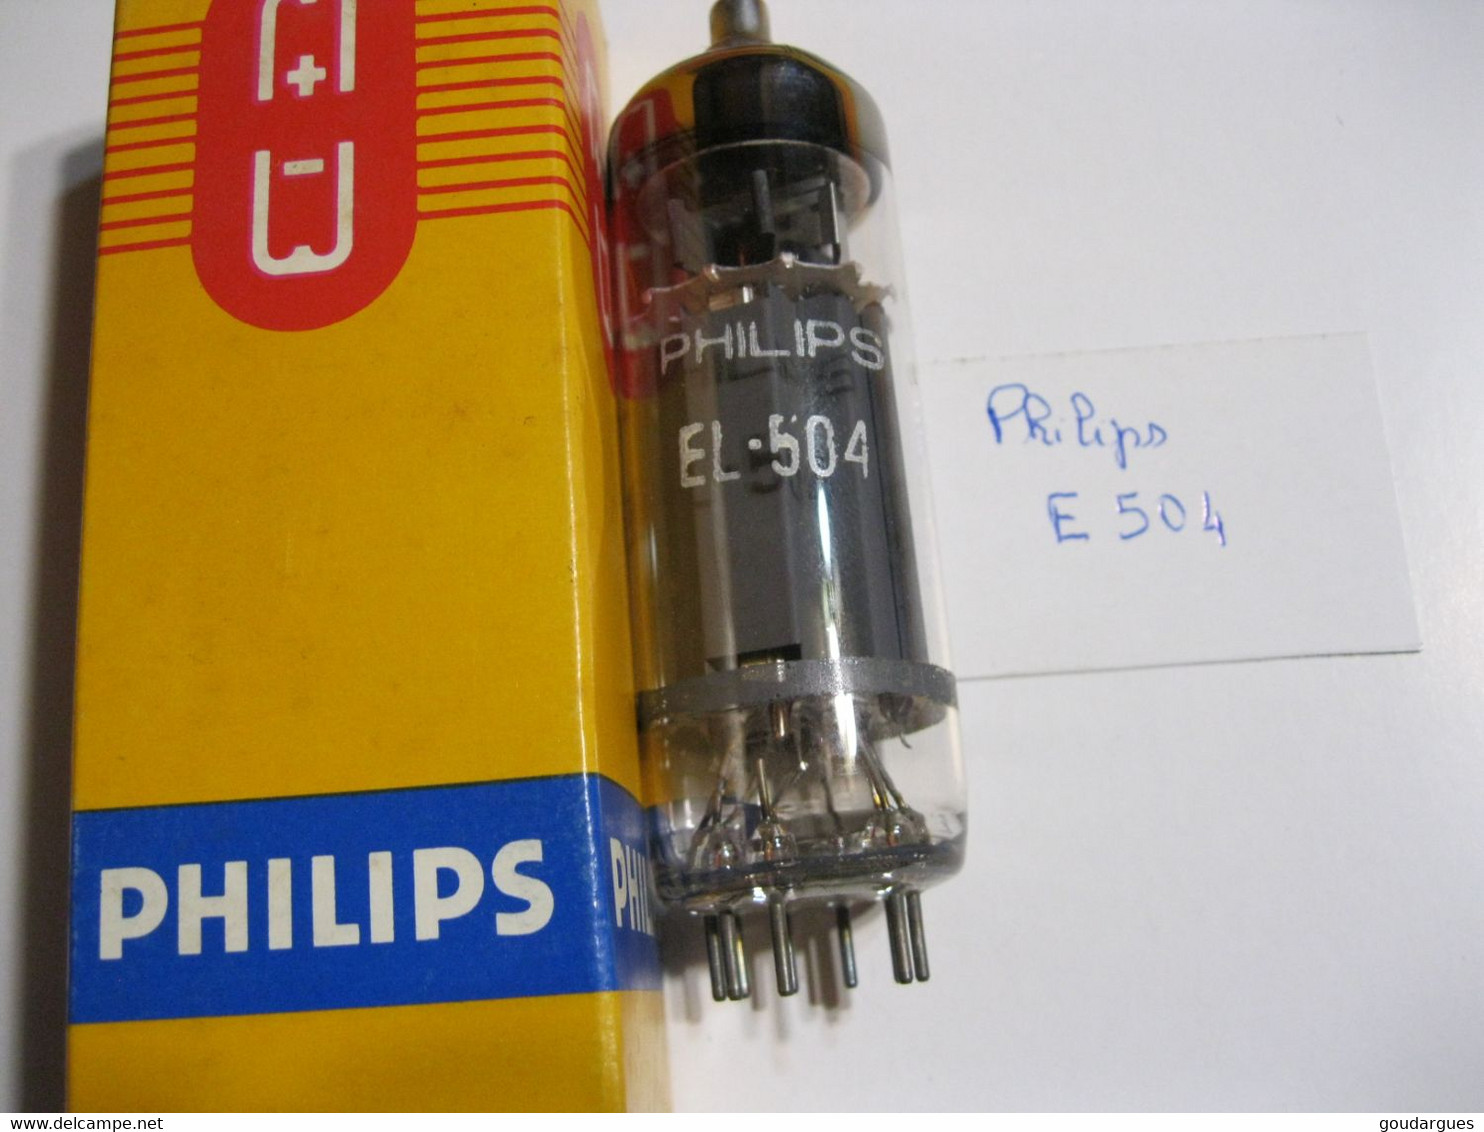 Philips - Tube EL 504 - Tubos